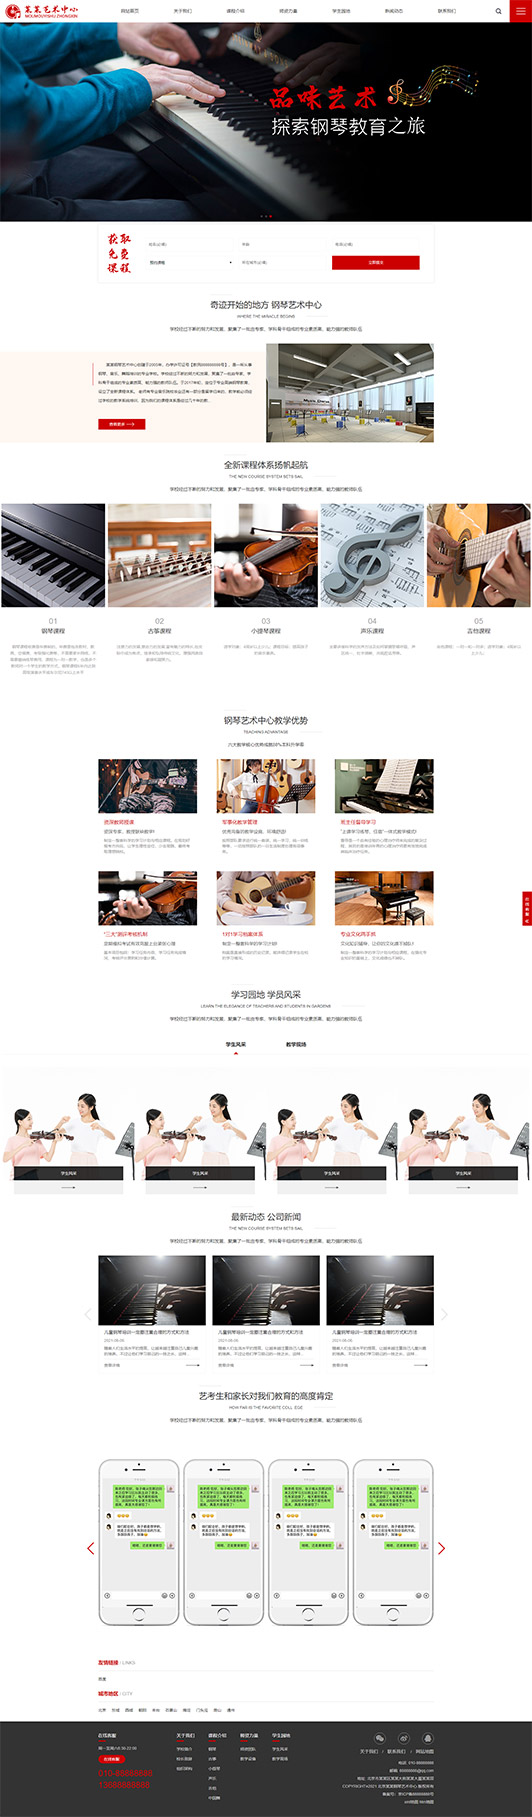 西宁钢琴艺术培训公司响应式企业网站